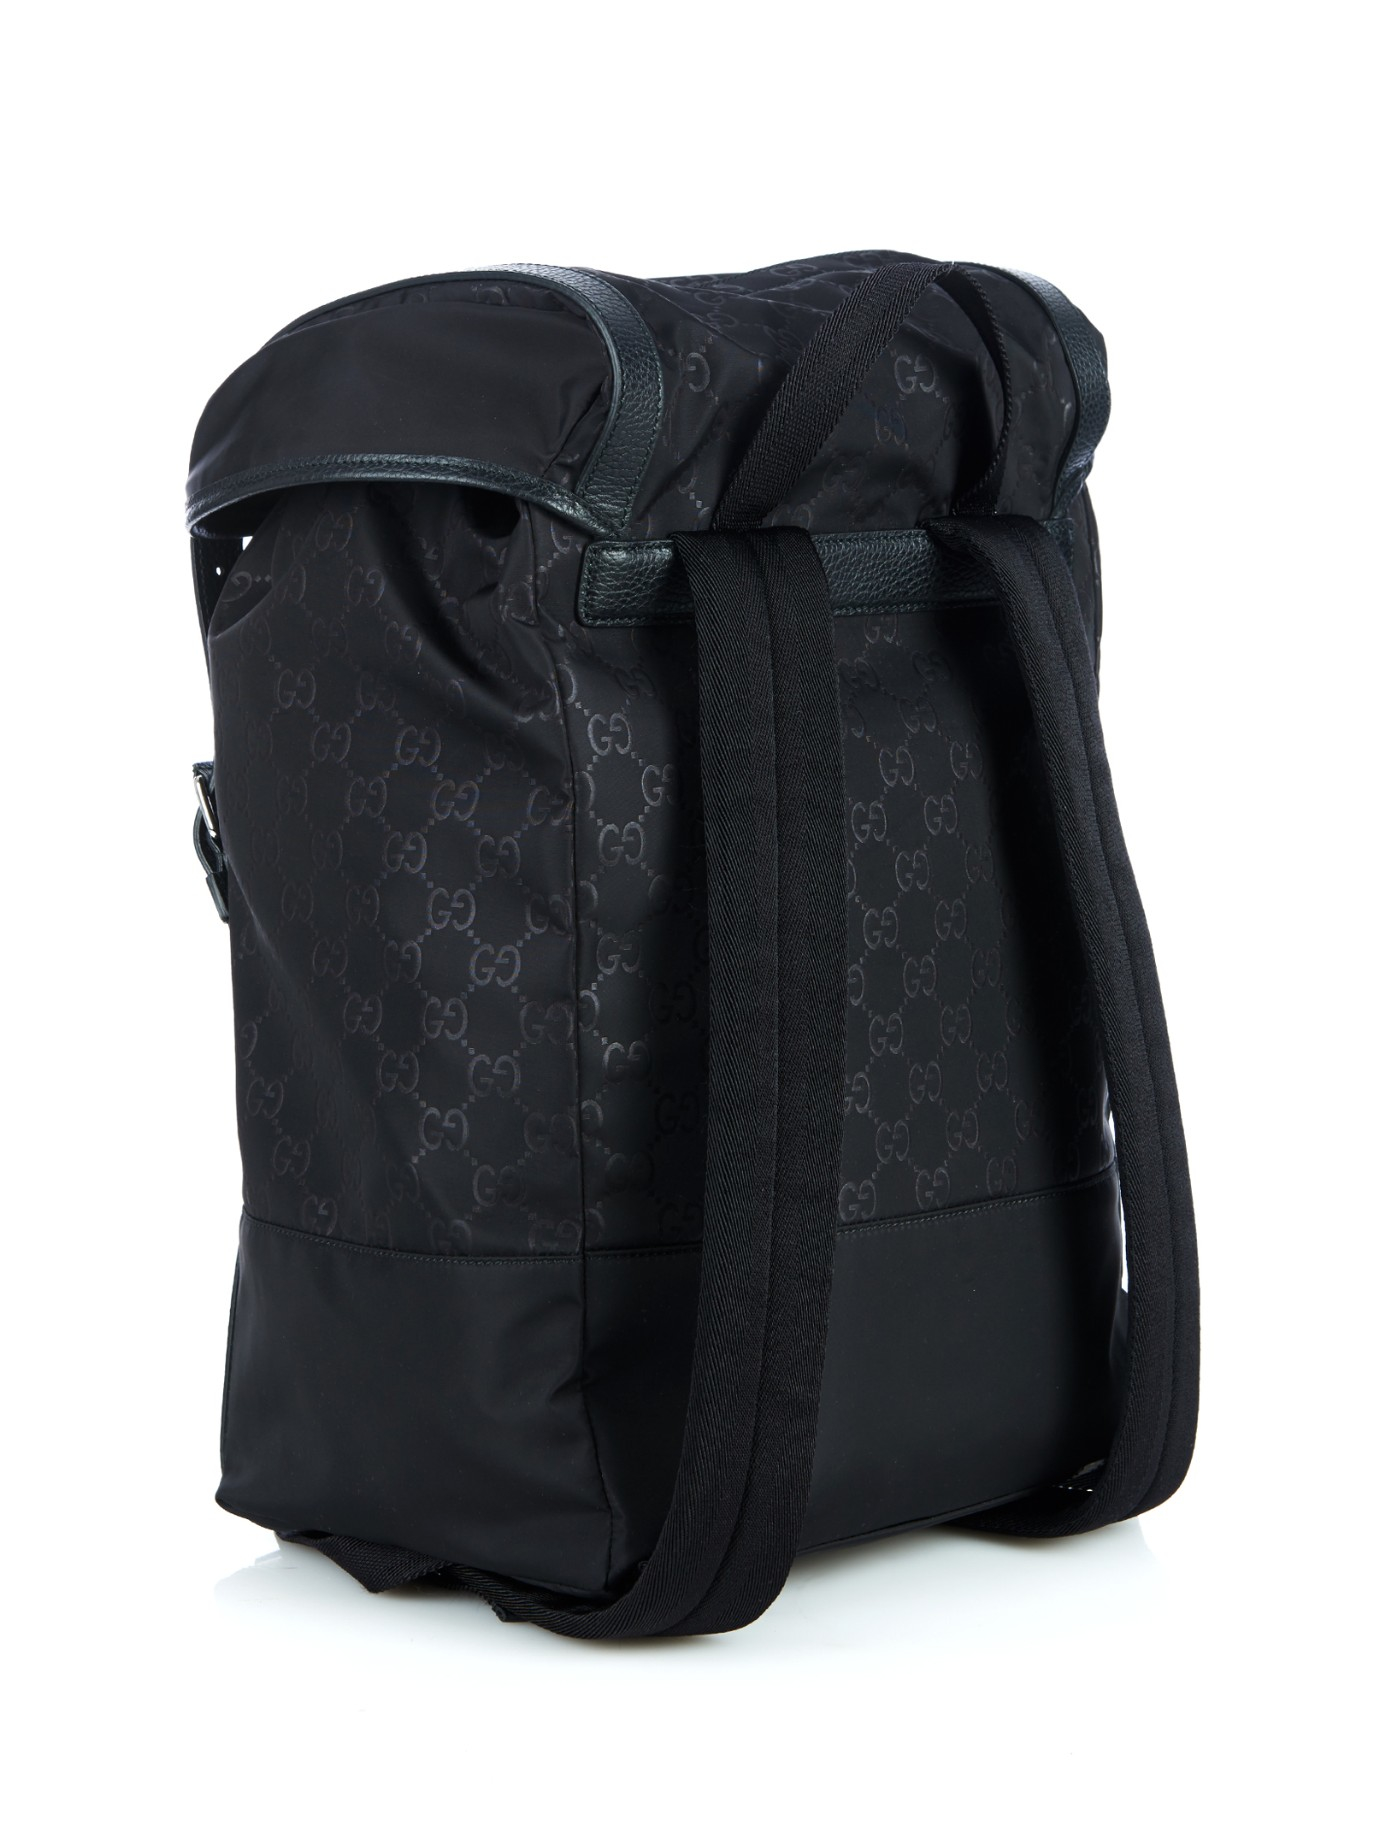 Lyst - Gucci Monogram Gg Nylon Backpack in Black for Men